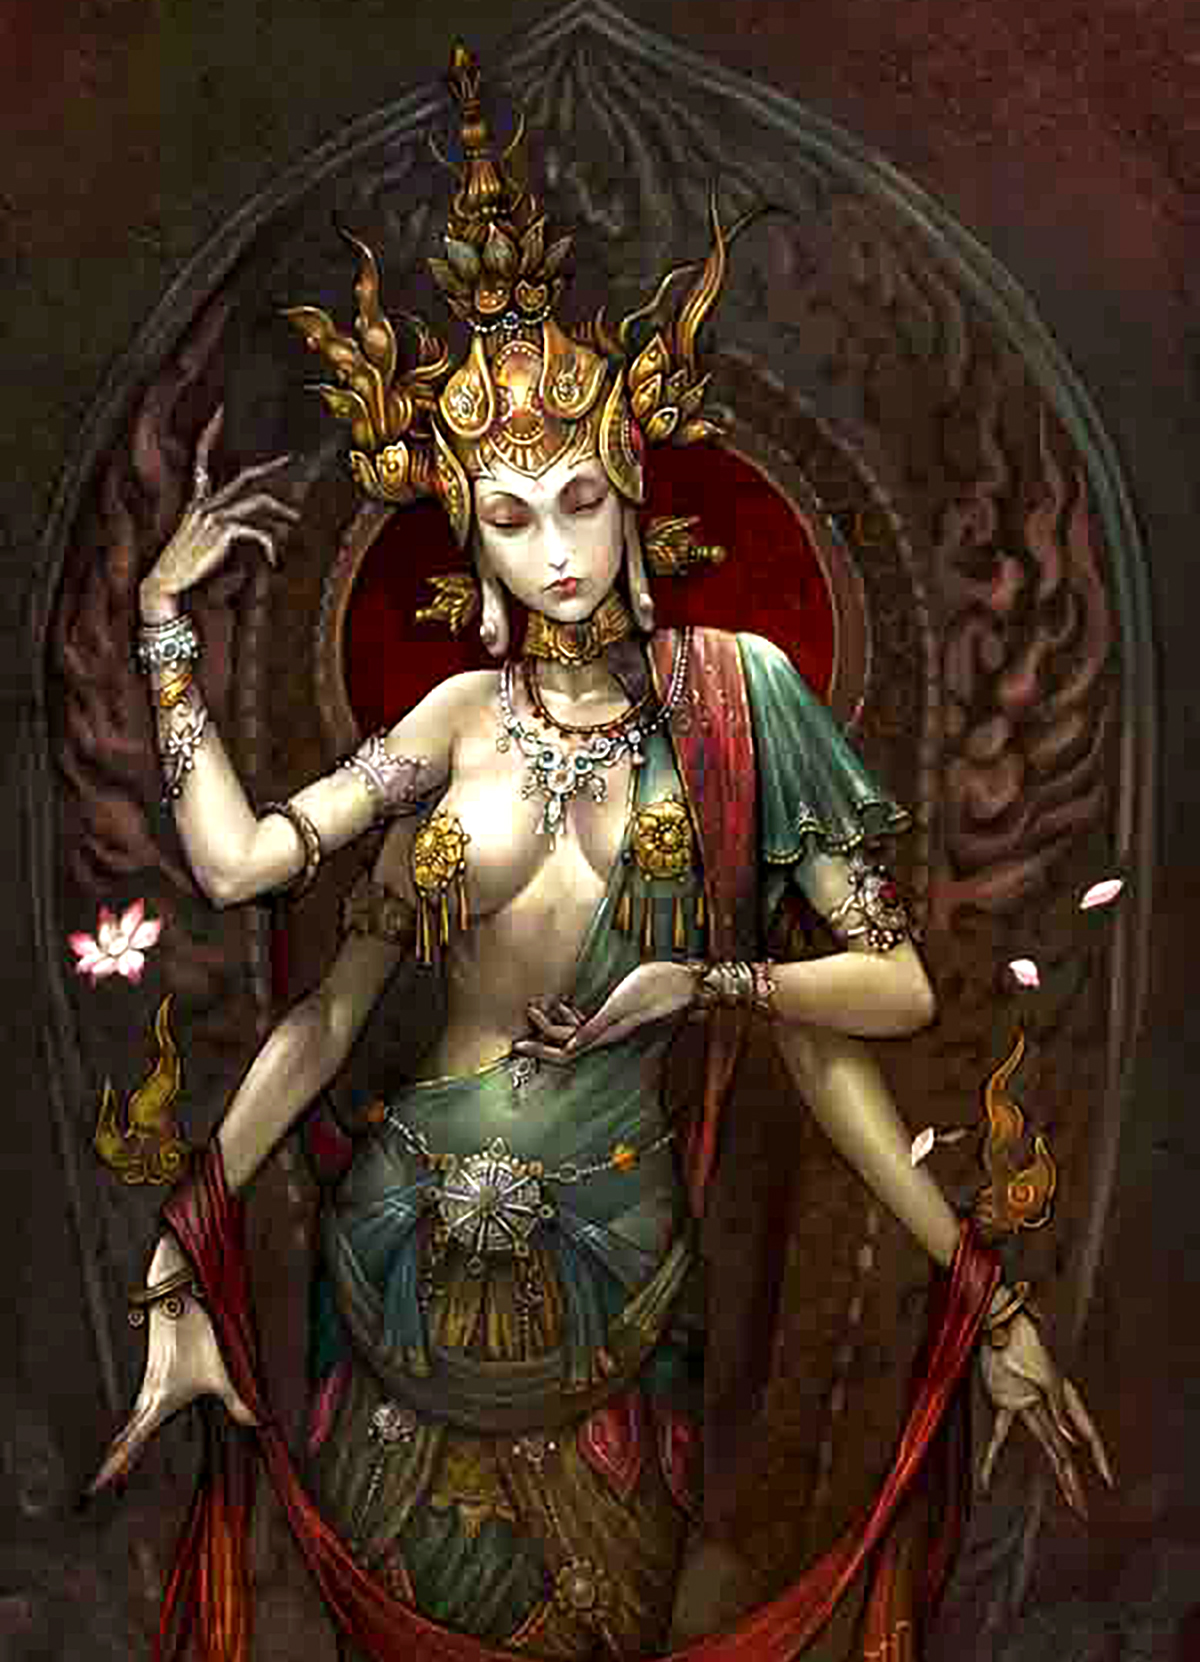 藏地八大神秘传说:萨迦女妖让人畏惧,香巴拉秘境令人神往